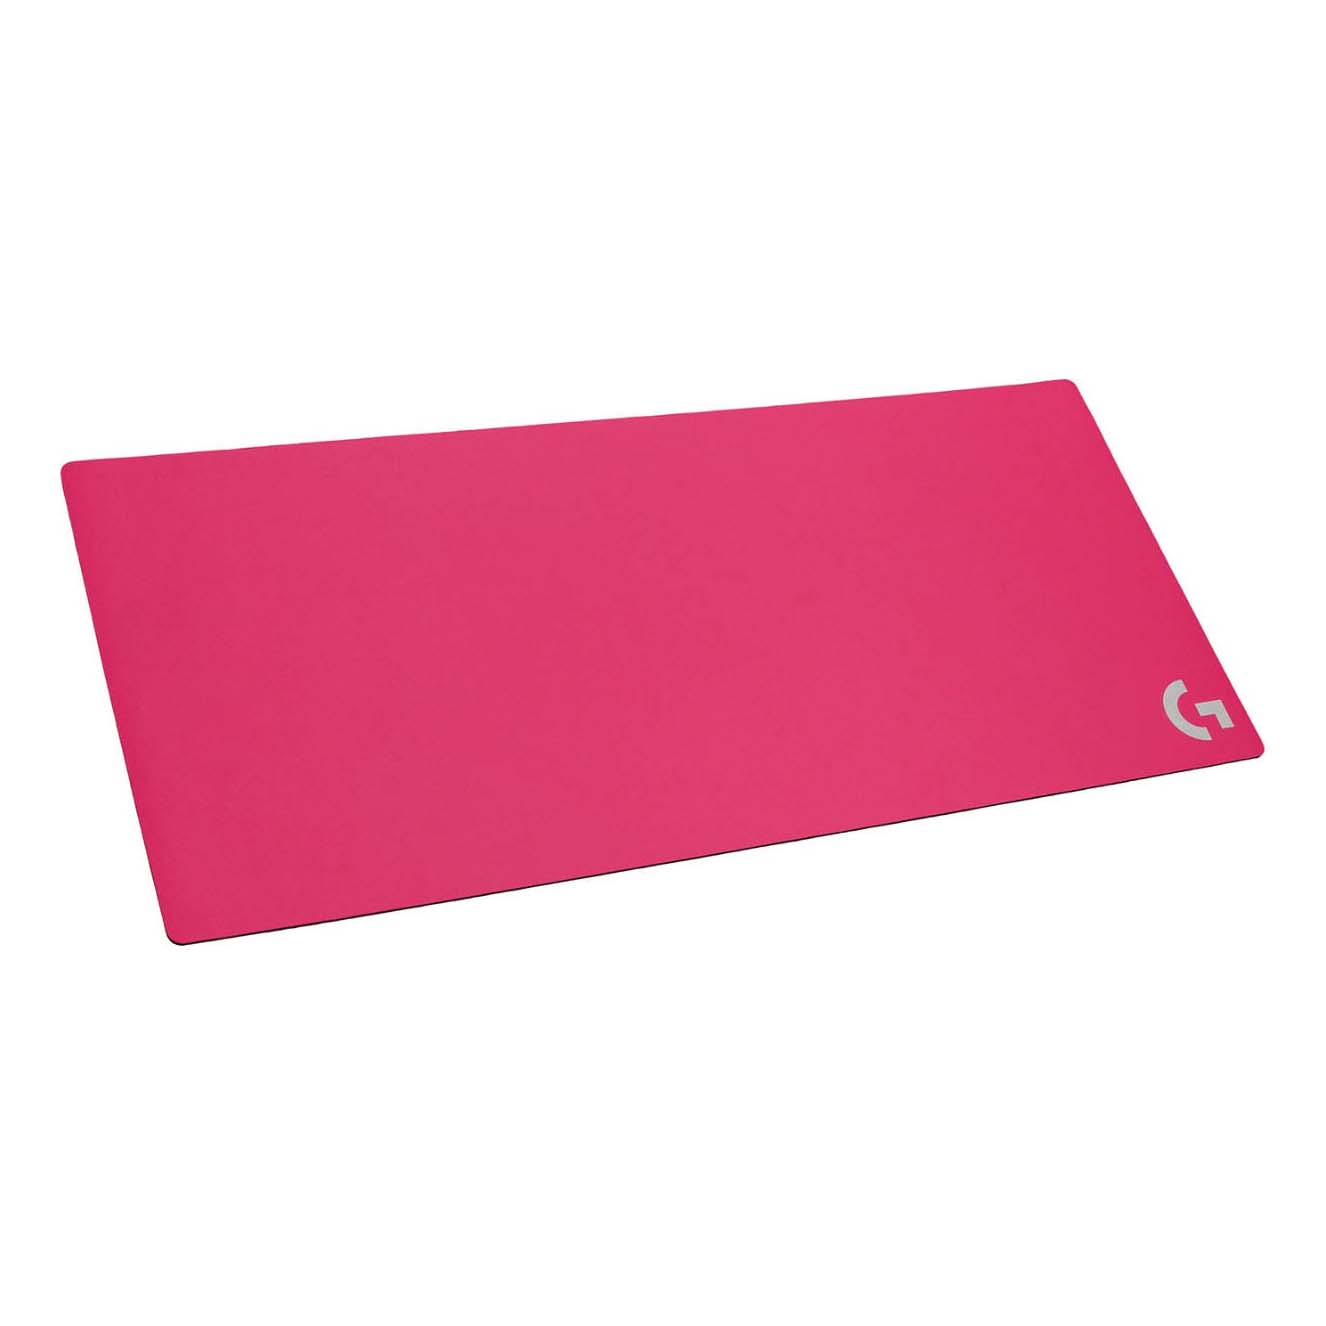 Игровой коврик для мыши Logitech G840 XL, розовый цена и фото